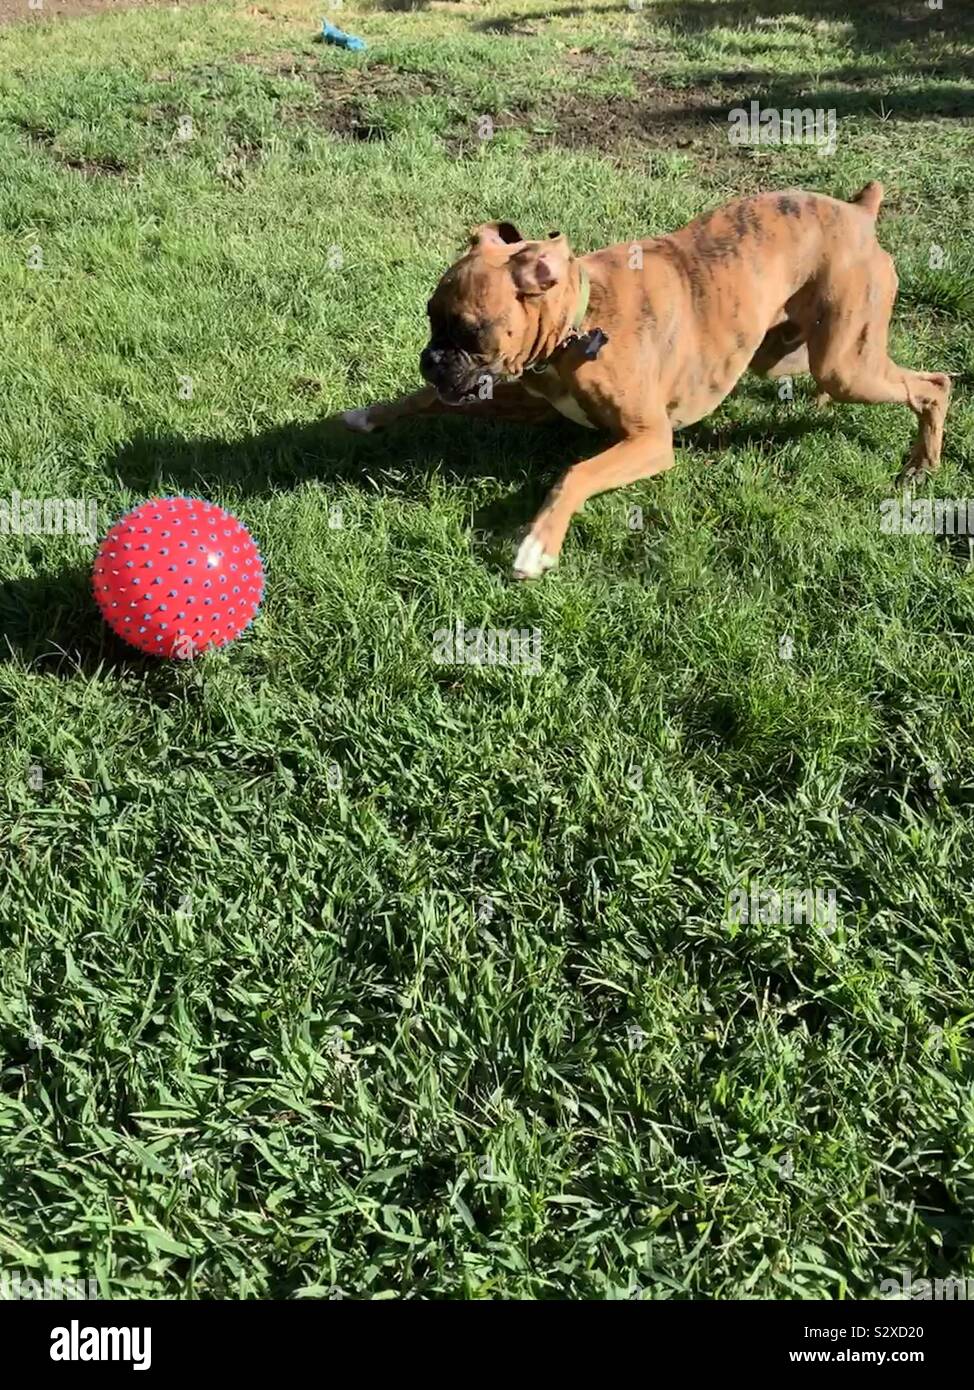 Notre chien boxer bringé jouer au ballon dans la cour Banque D'Images